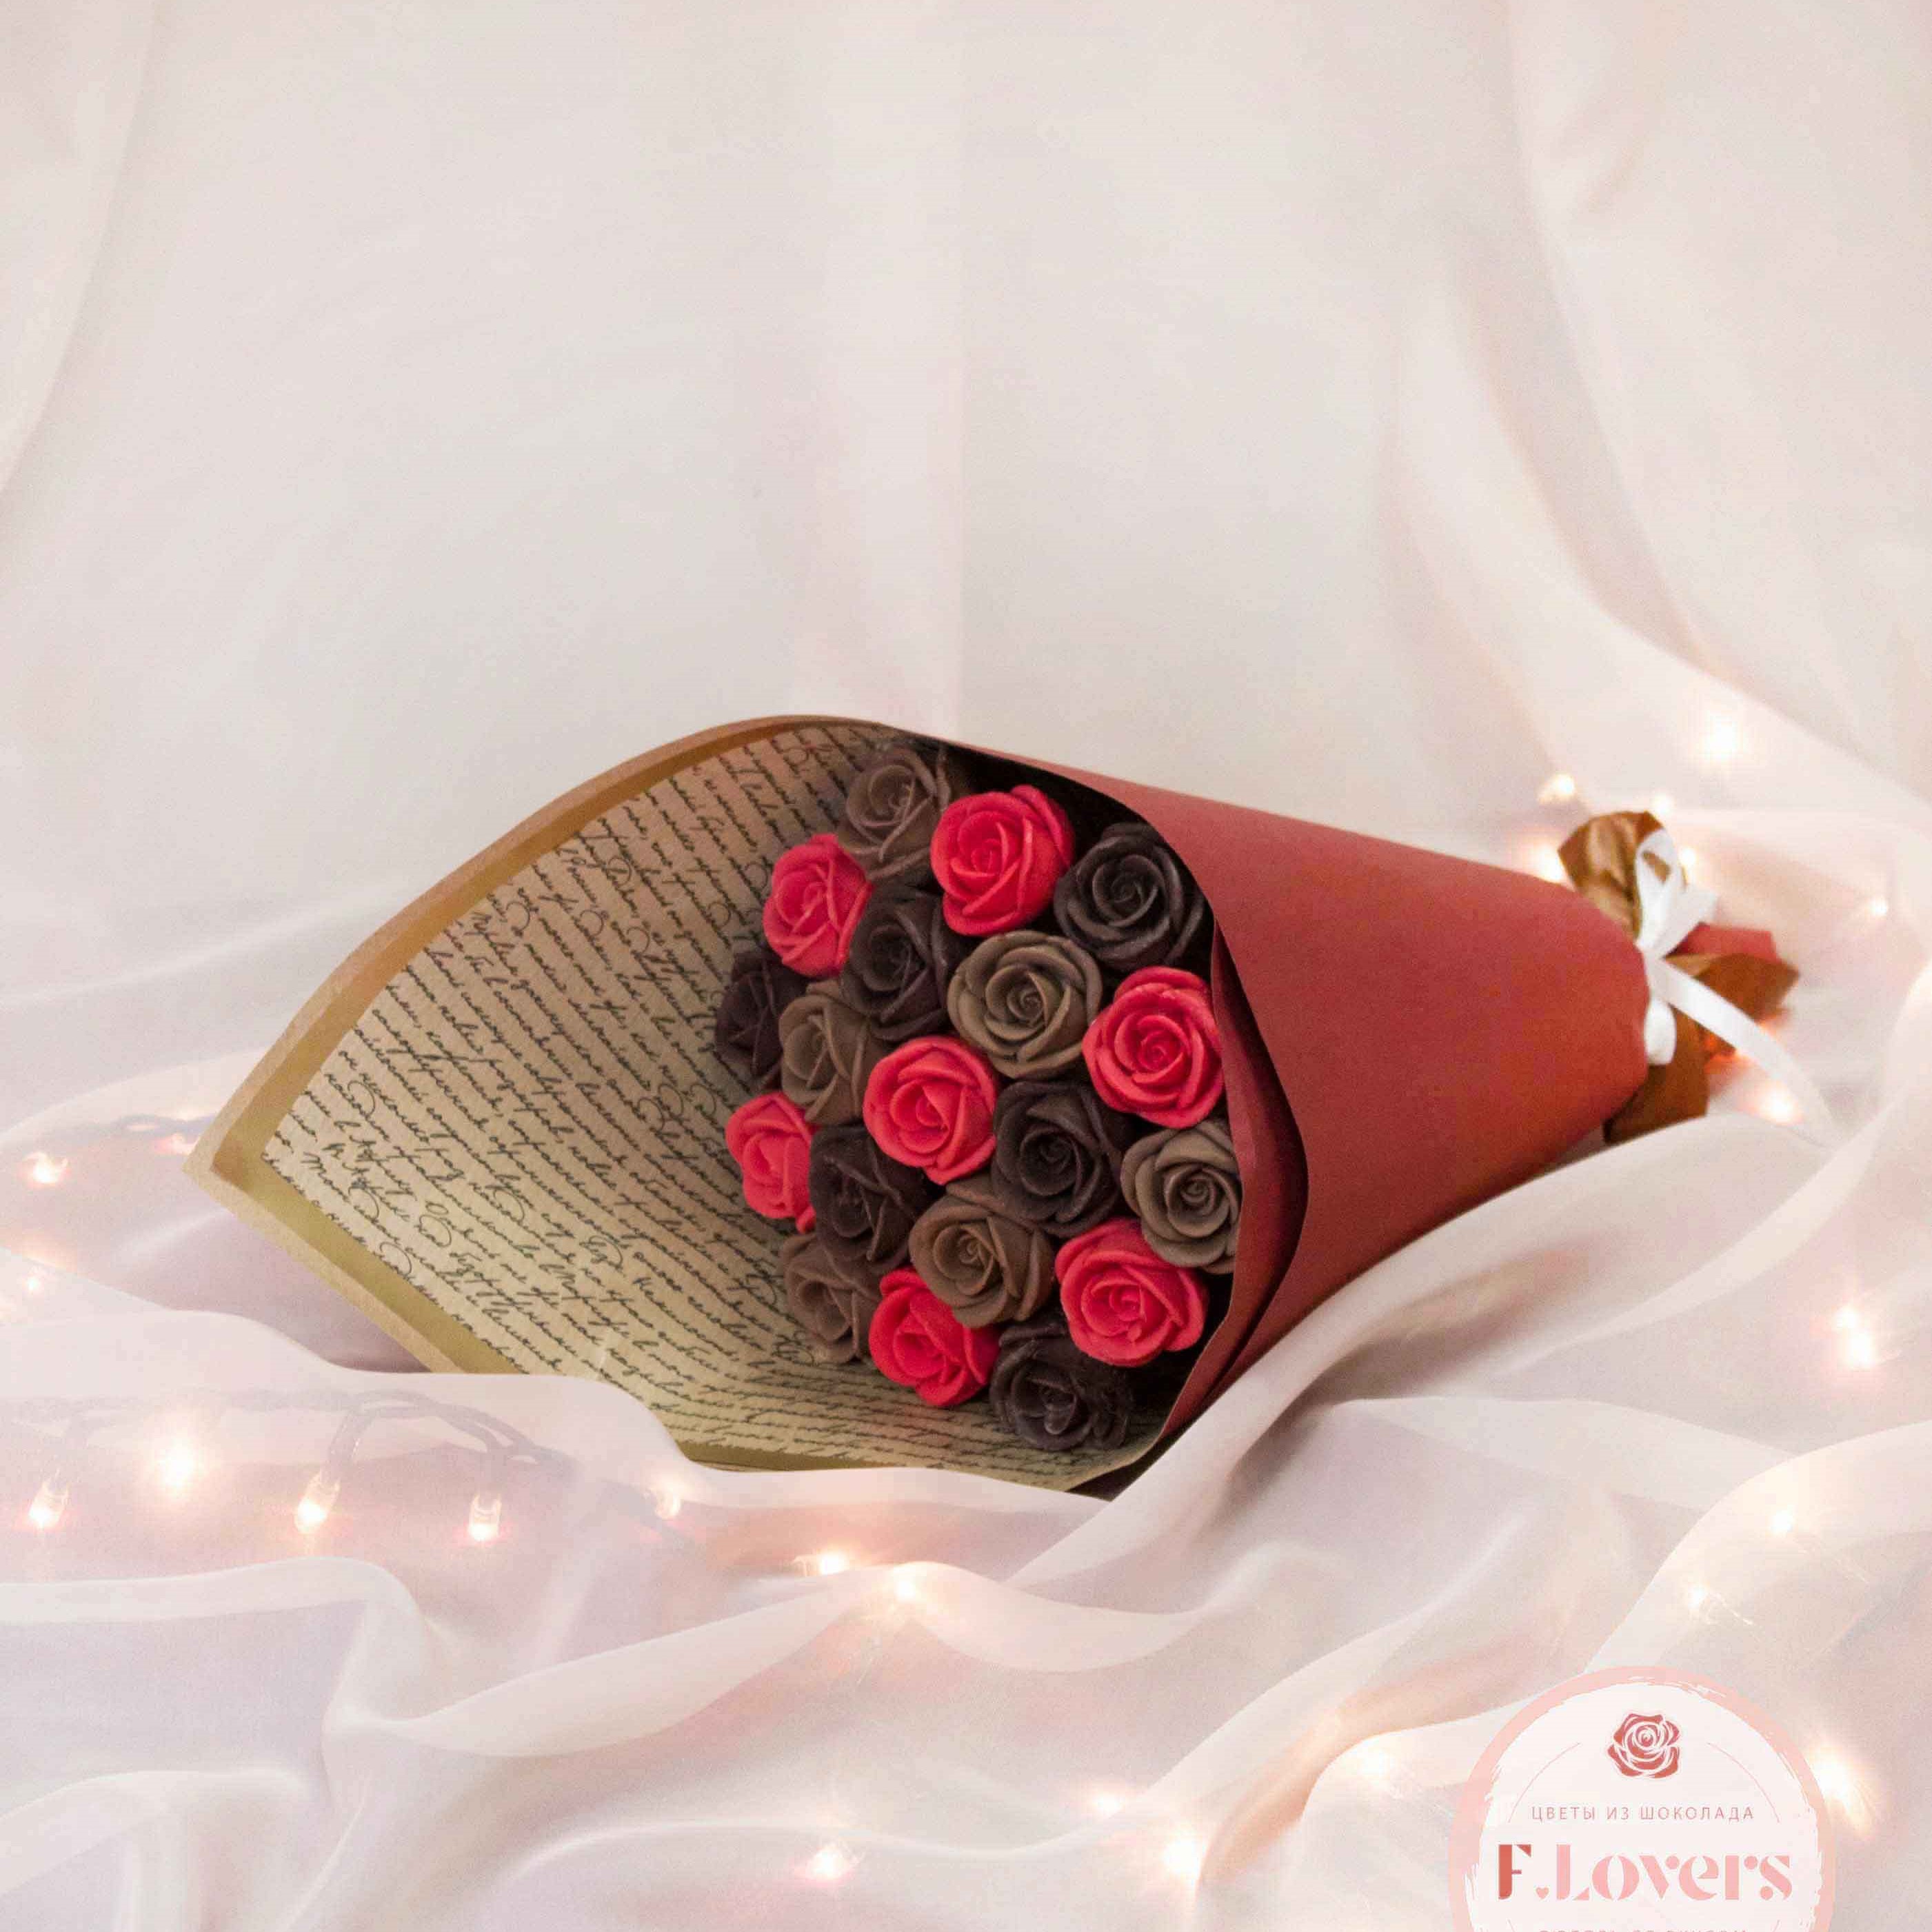 Букет из 19 шоколадных роз "Не телефонный разговор"